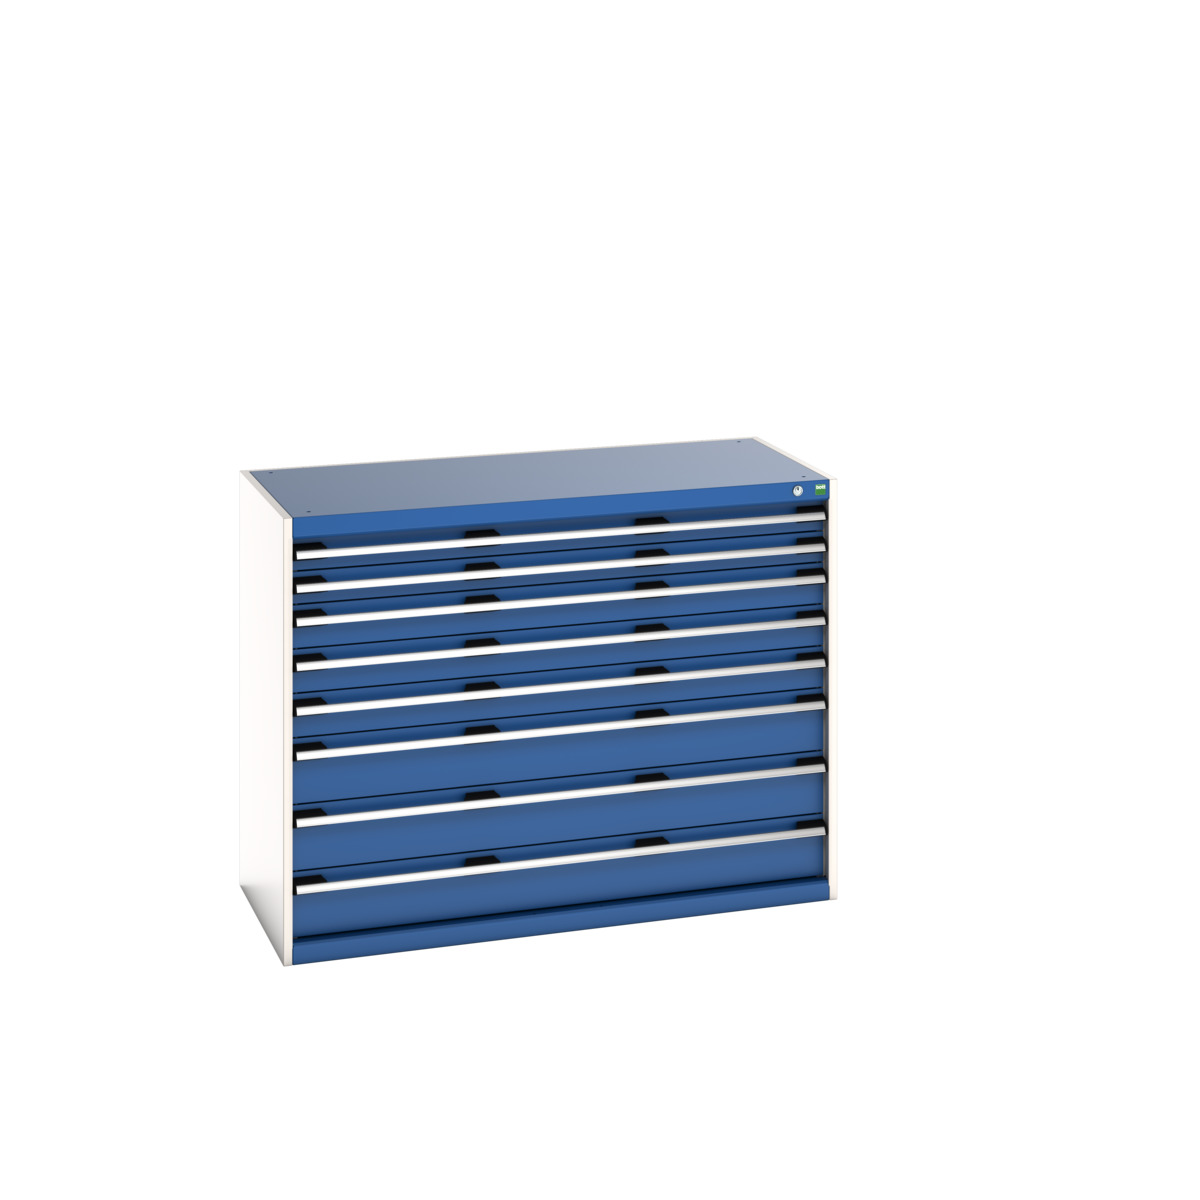 40022153.11V - cubio drawer cabinet